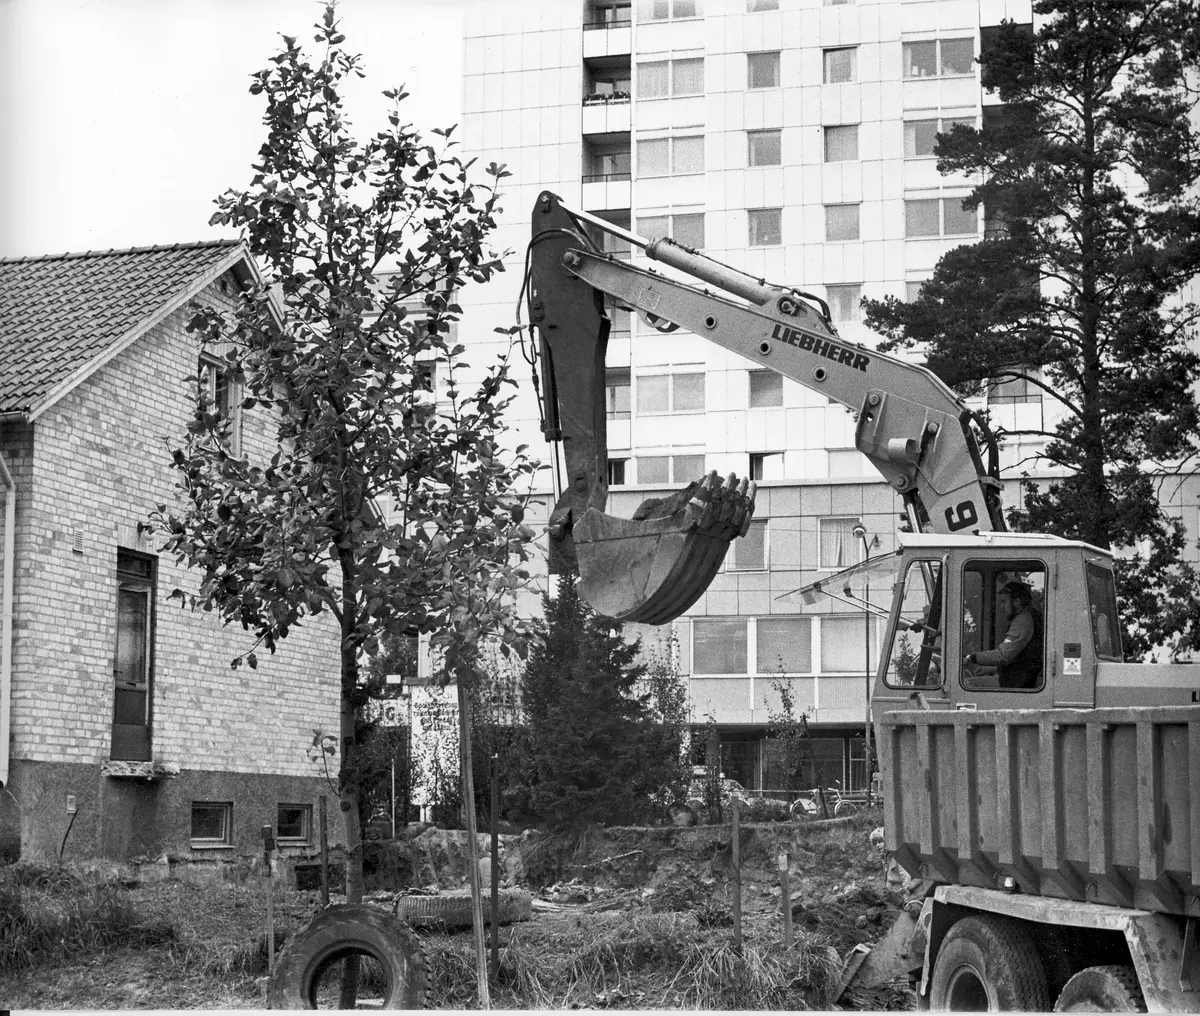 Näsbyparks kyrka byggnation påbörjad 1979